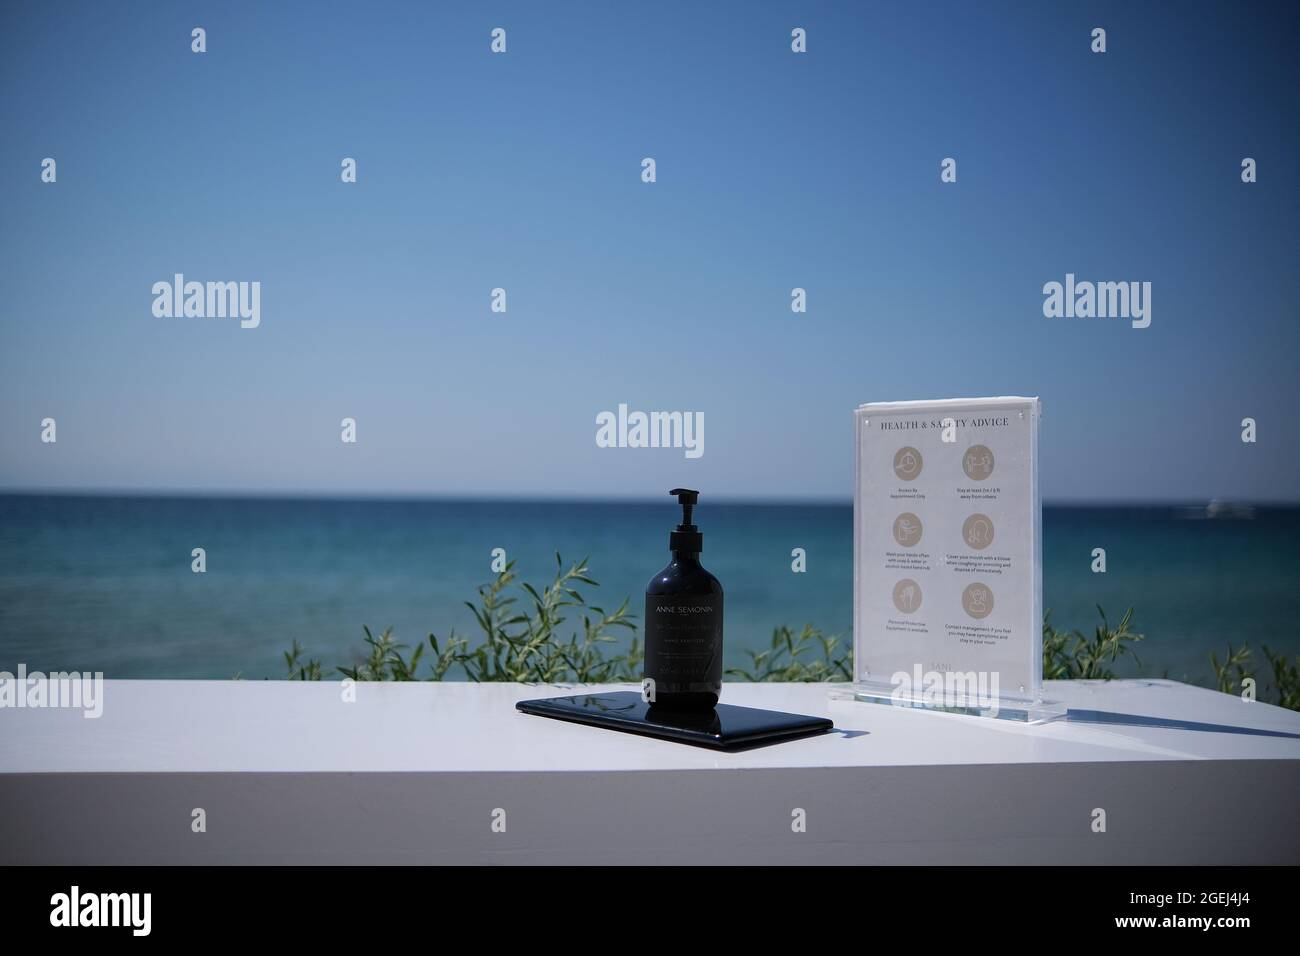 Sani, Grecia - 16 de agosto de 2021 : Un gel antiséptico de handrub a base de alcohol y un formulario de consejos de salud y seguridad frente al mar egeo Foto de stock